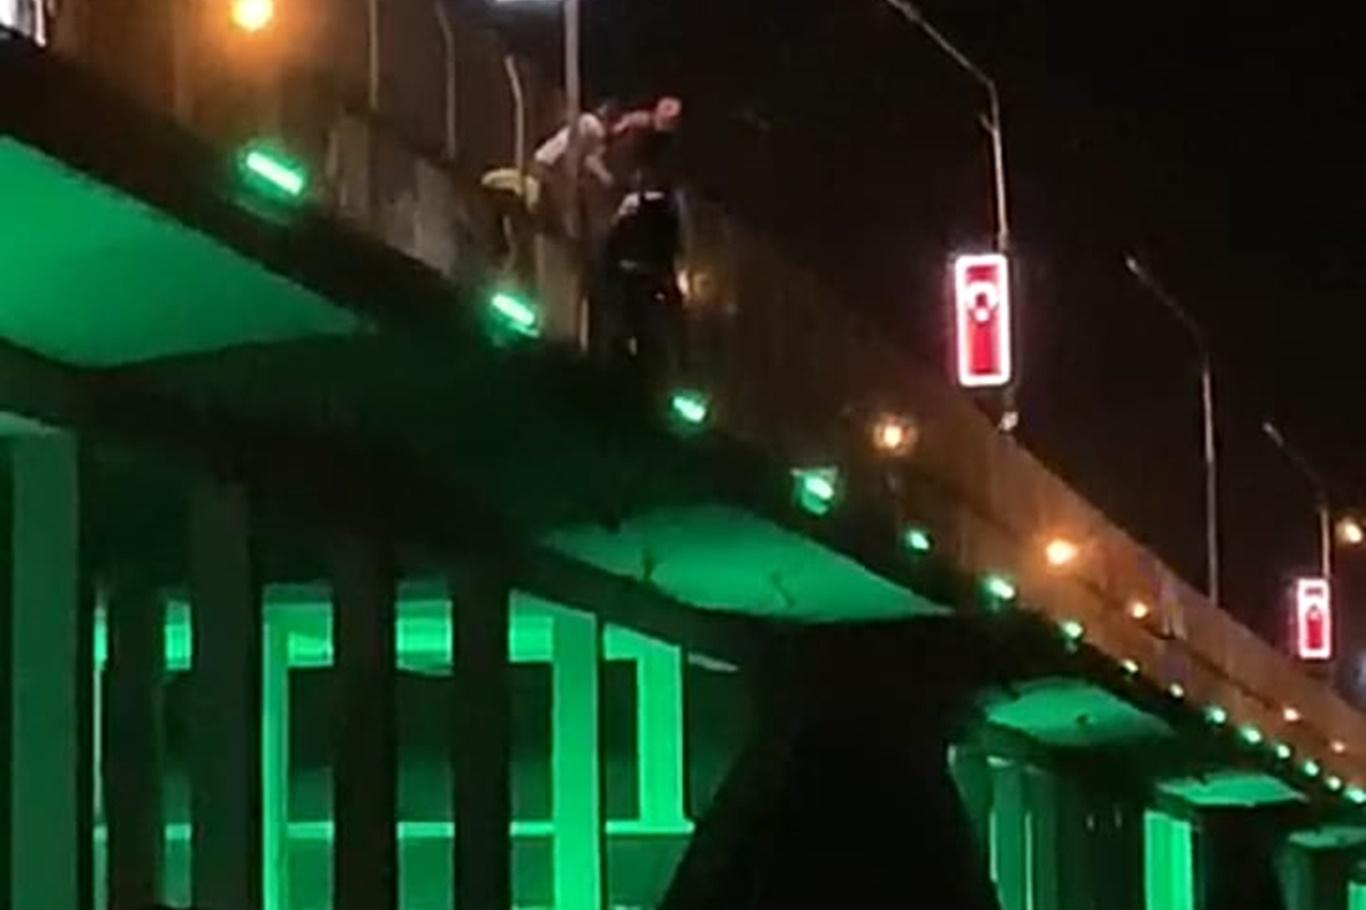 Birecik Köprüsü’ne çıkan şahıs intihar girişiminde bulundu